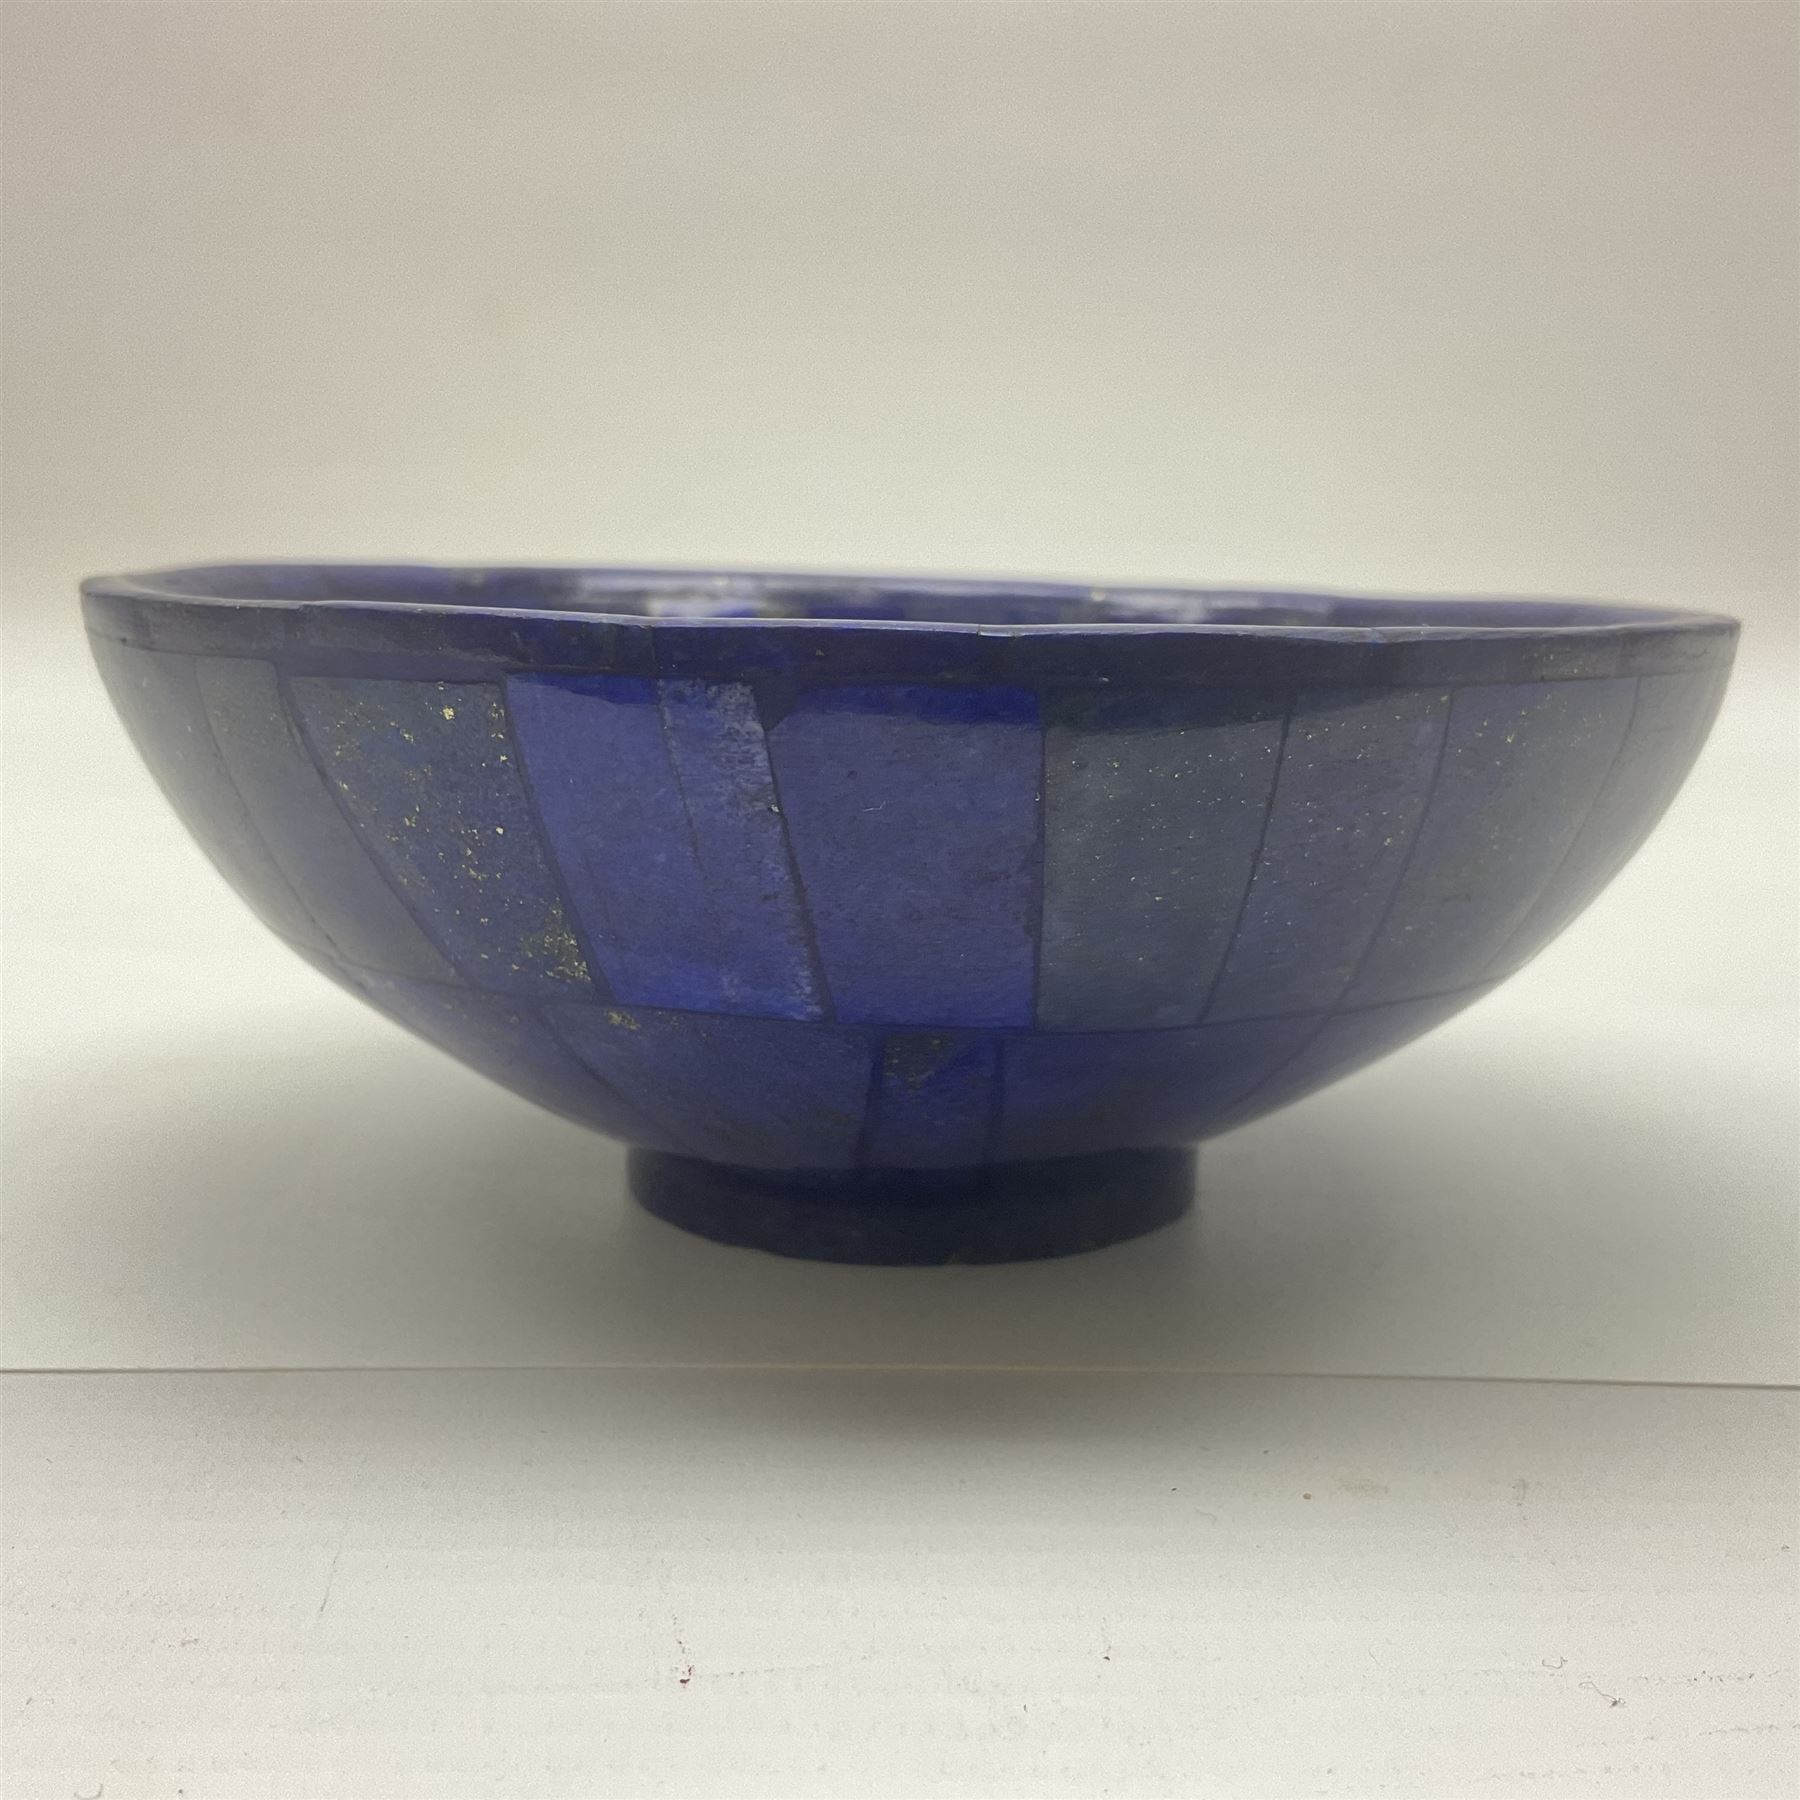 Lapis lazuli mosaic bowl - Image 3 of 4